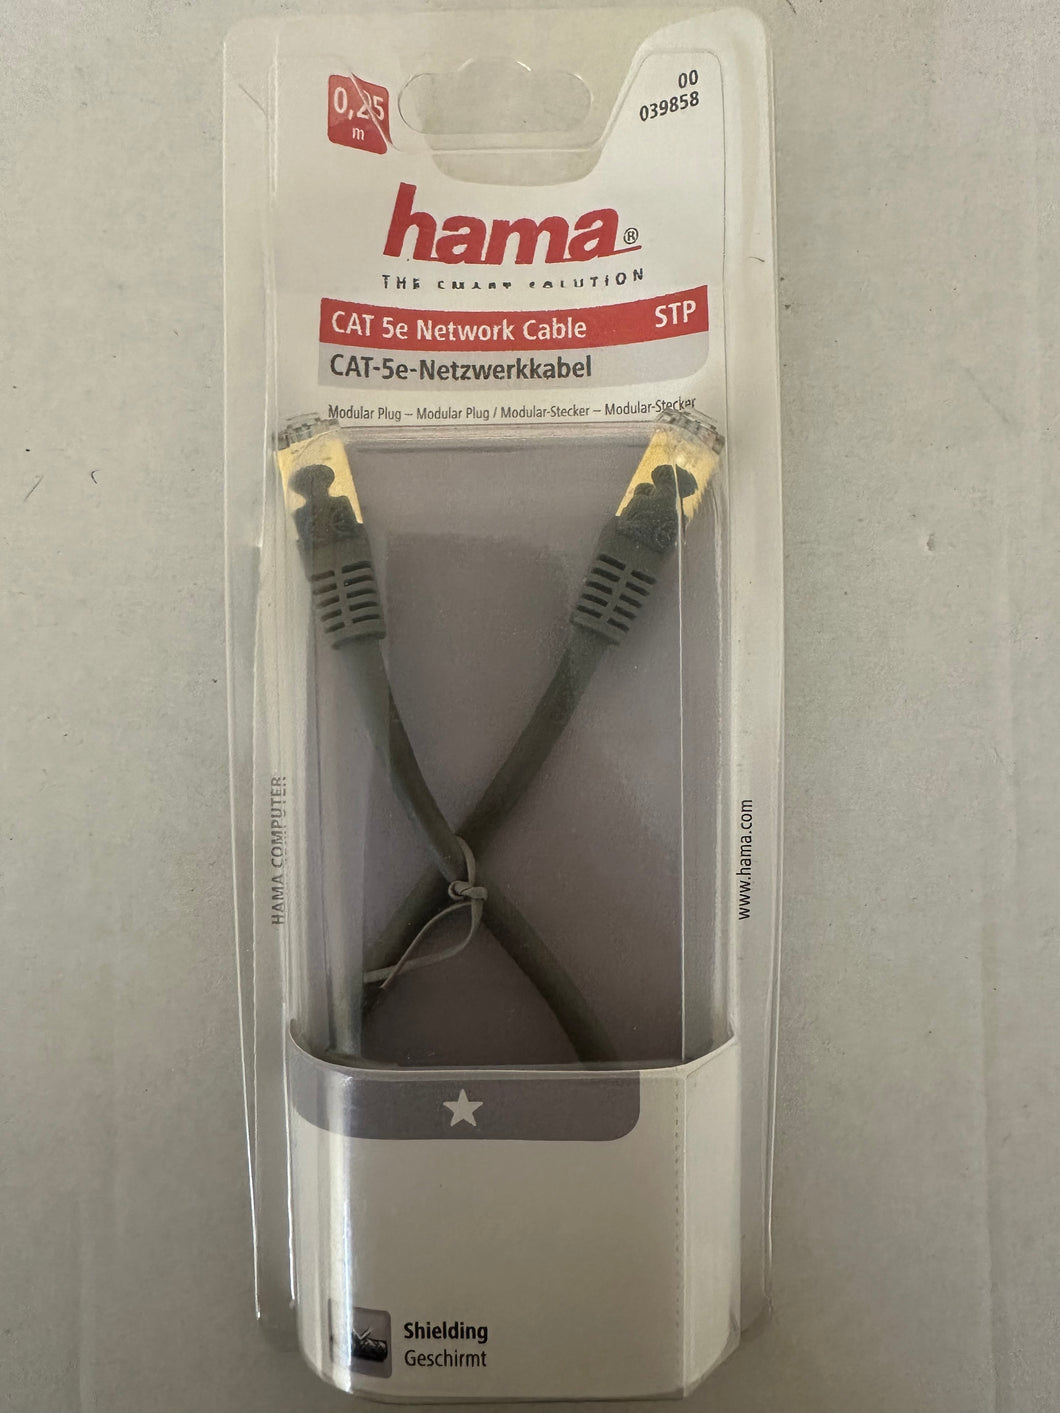 Hama 00039858 CAT-5e-Netzwerkkabel STP vergoldet geschirmt 0,25 m (Grau)